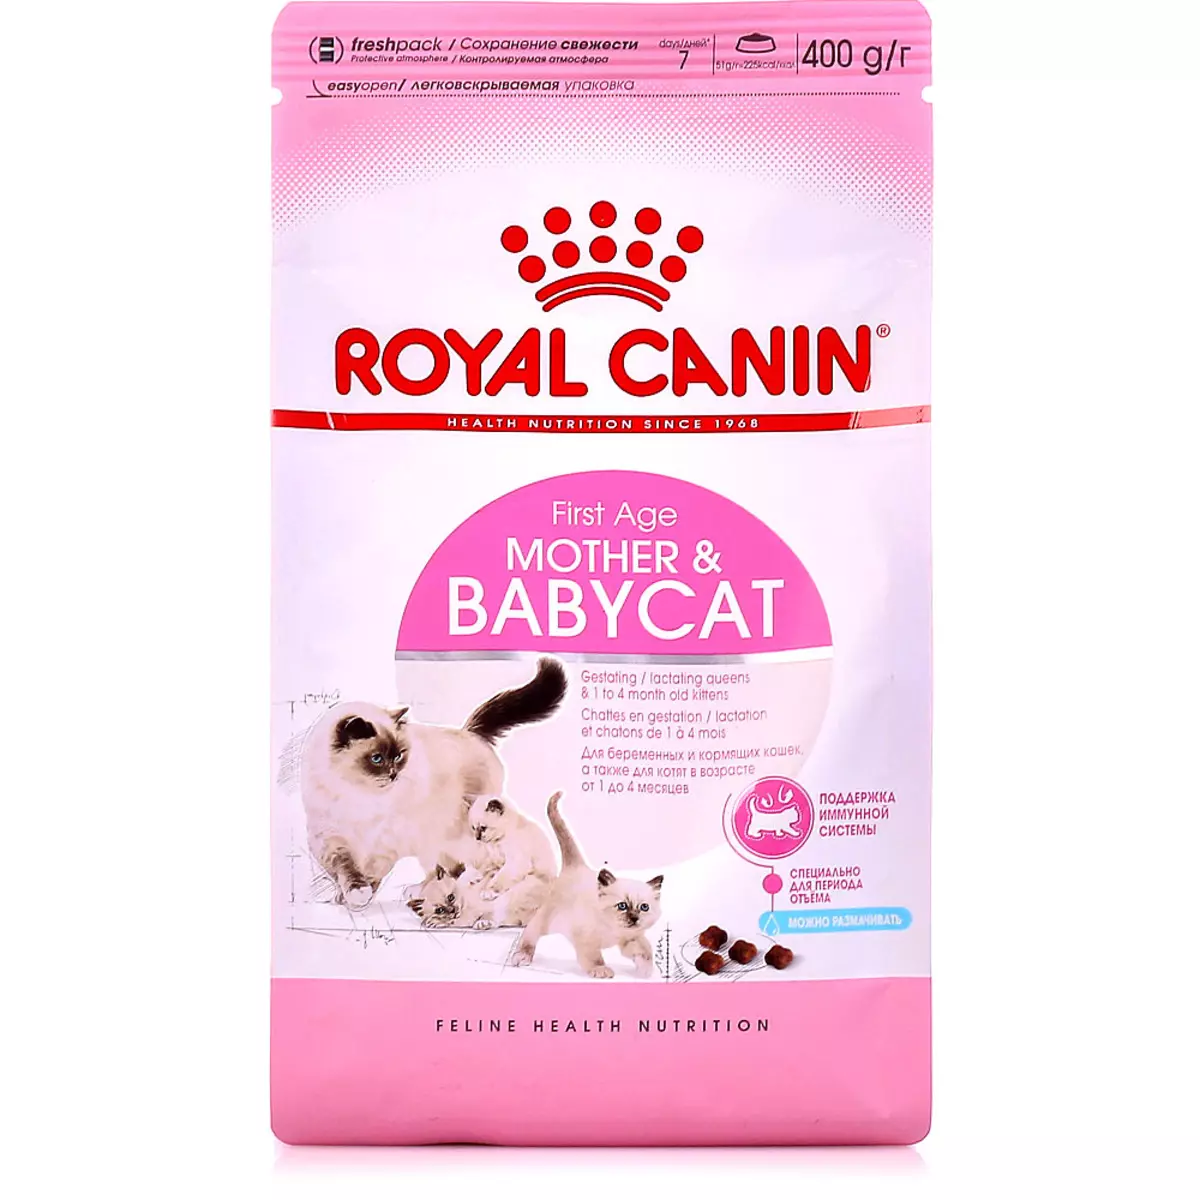 Kuiva ruoka Kissanpensioille Royal Canin: Kissan koostumus jopa 12 kuukautta, syöttö steriloitu pentuja. Se haisee heidät? Annos 22012_9